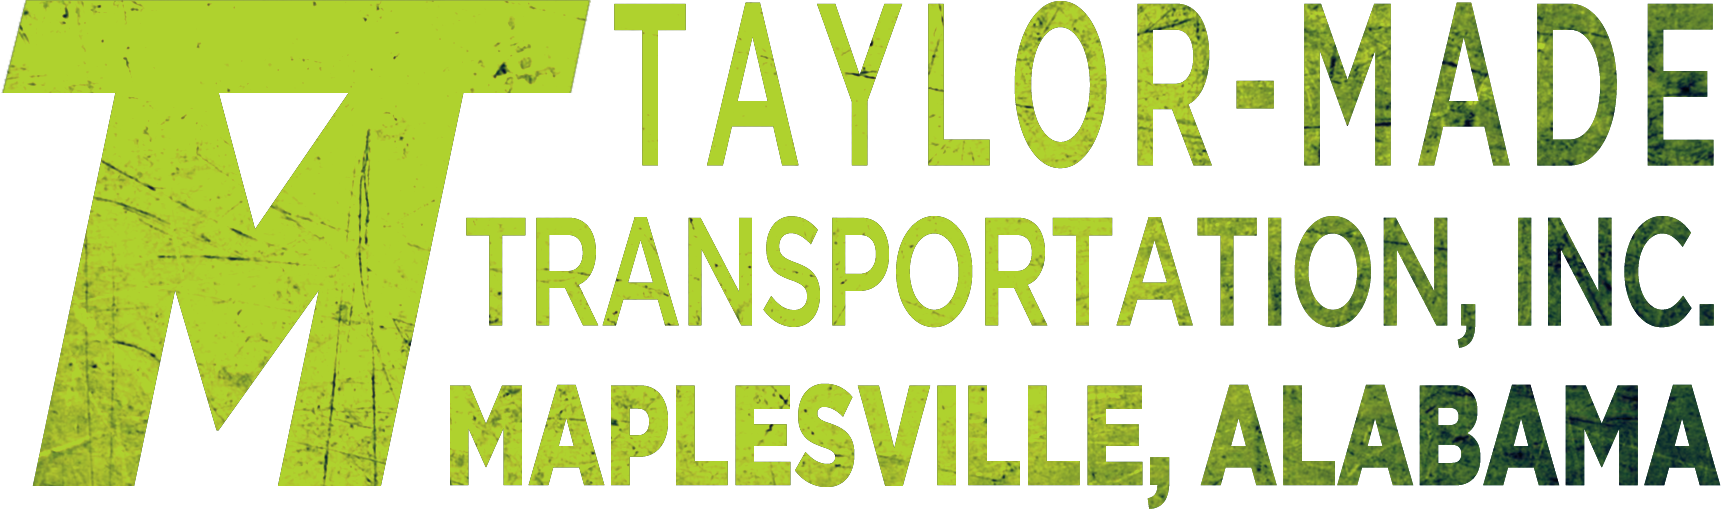 Taylor-Made Transportation